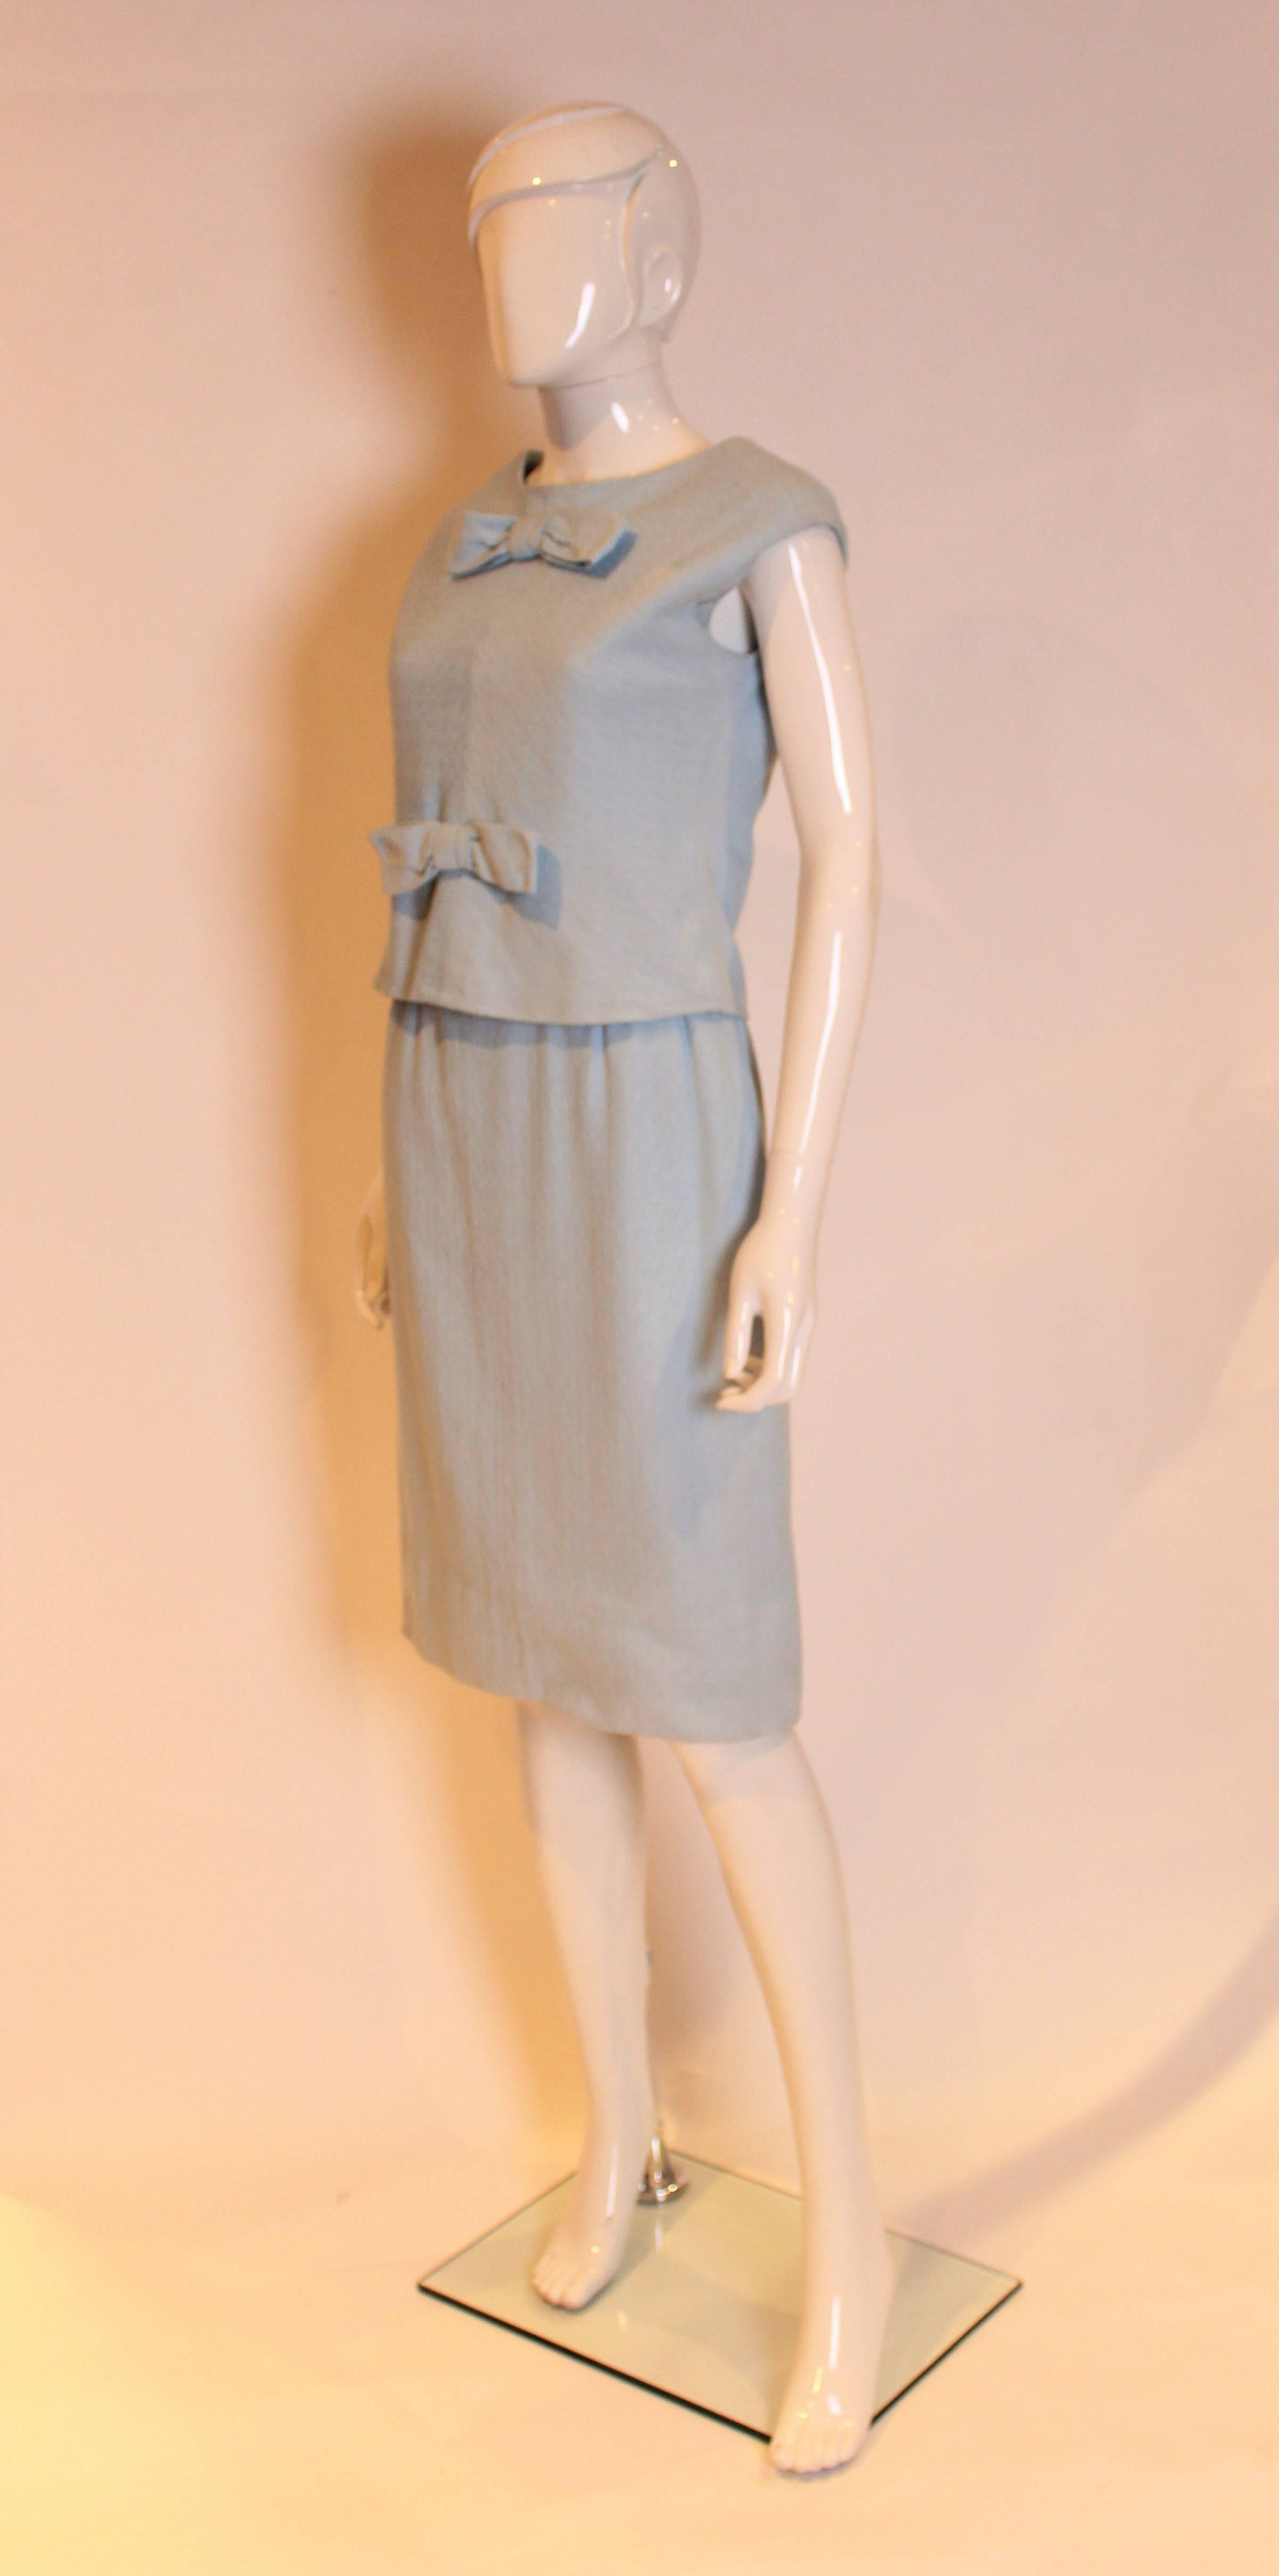 Ein schickes Kleid von Yves Saint Laurent, hergestellt für das britische Kaufhaus Fortnum and Mason. Das Kleid aus strukturierter hellblauer Wolle hat ein abnehmbares Oberteil mit vier Knöpfen auf der Rückseite und zwei Schleifen auf der